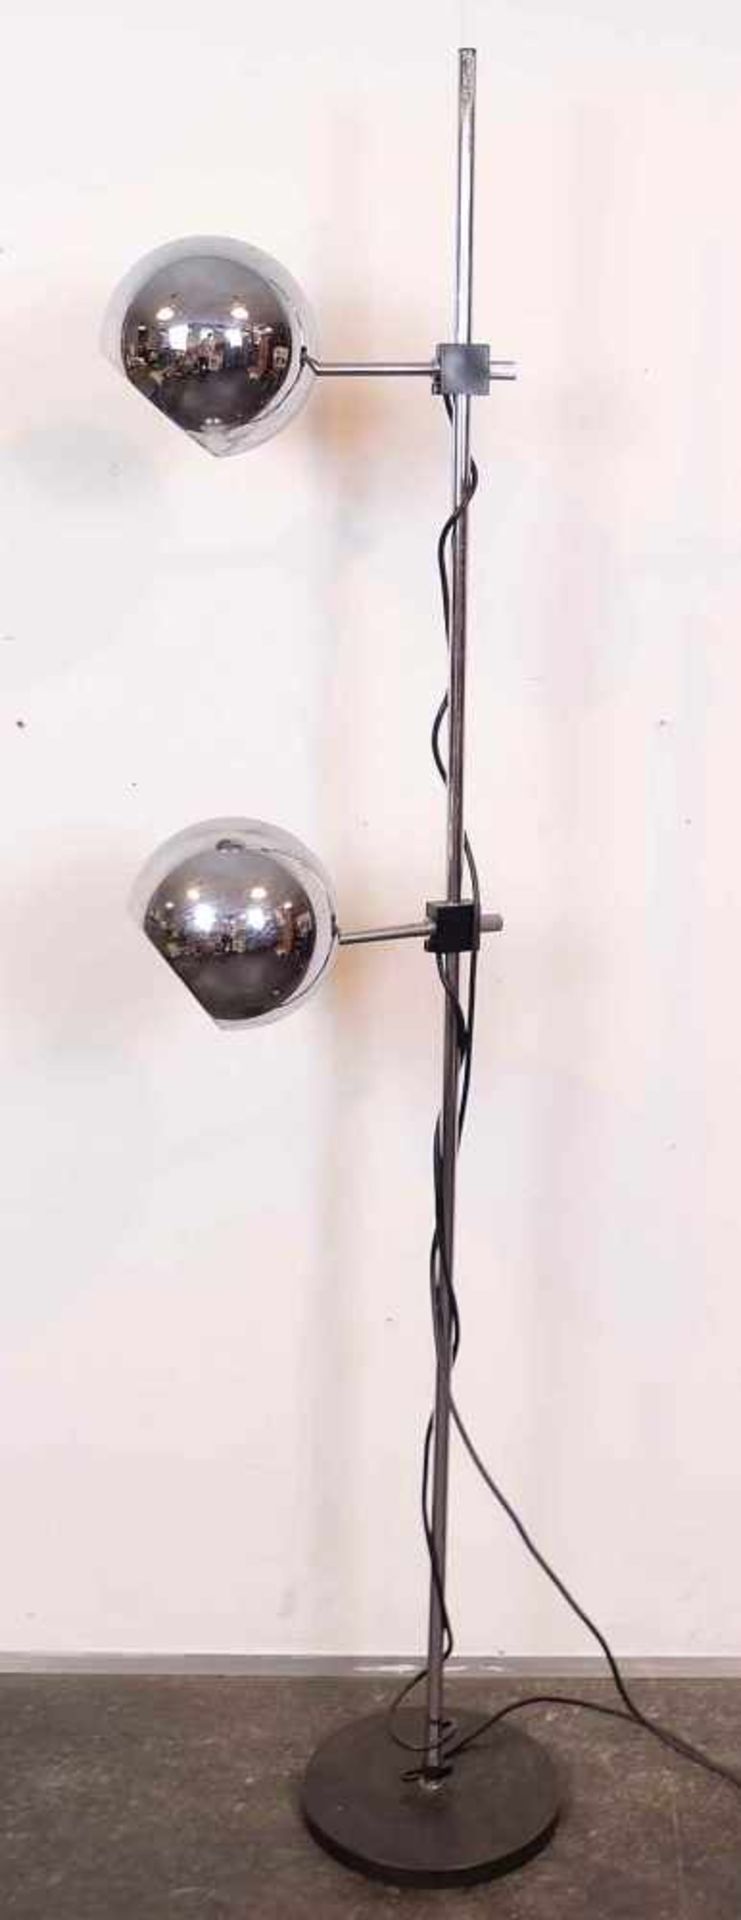 STEHLAMPE, 1970er Jahre, Gusseisener Scheibenfuß, Chromstange mit 2 entspr. verstellbaren